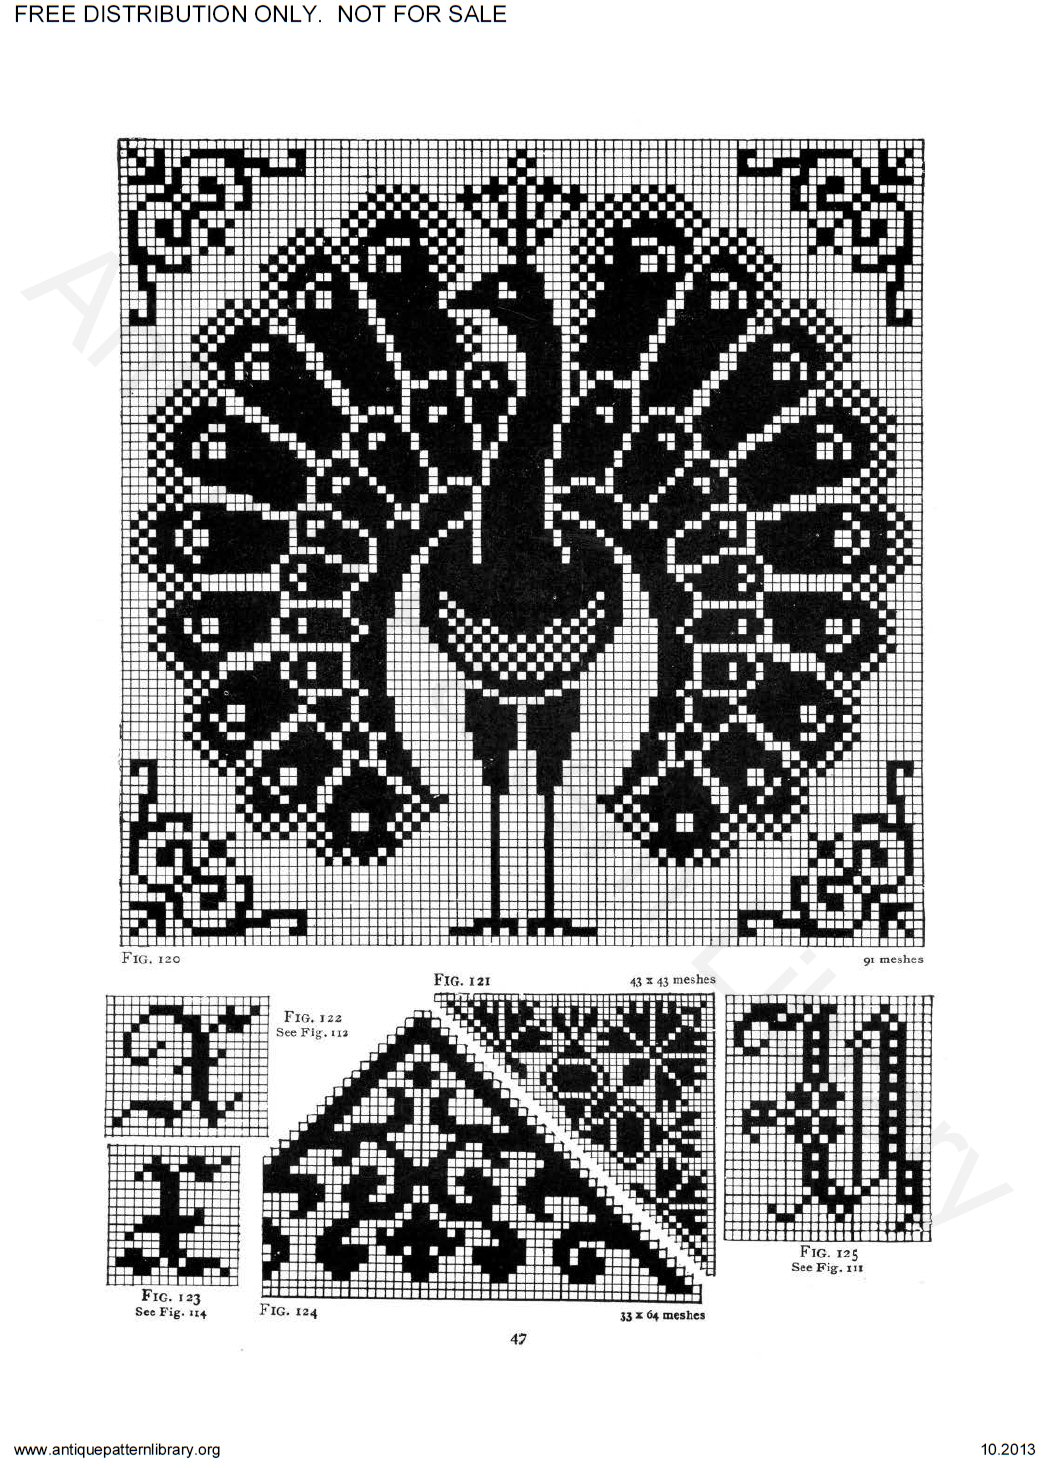 6-JA035 Priscilla Filet Crochet Book